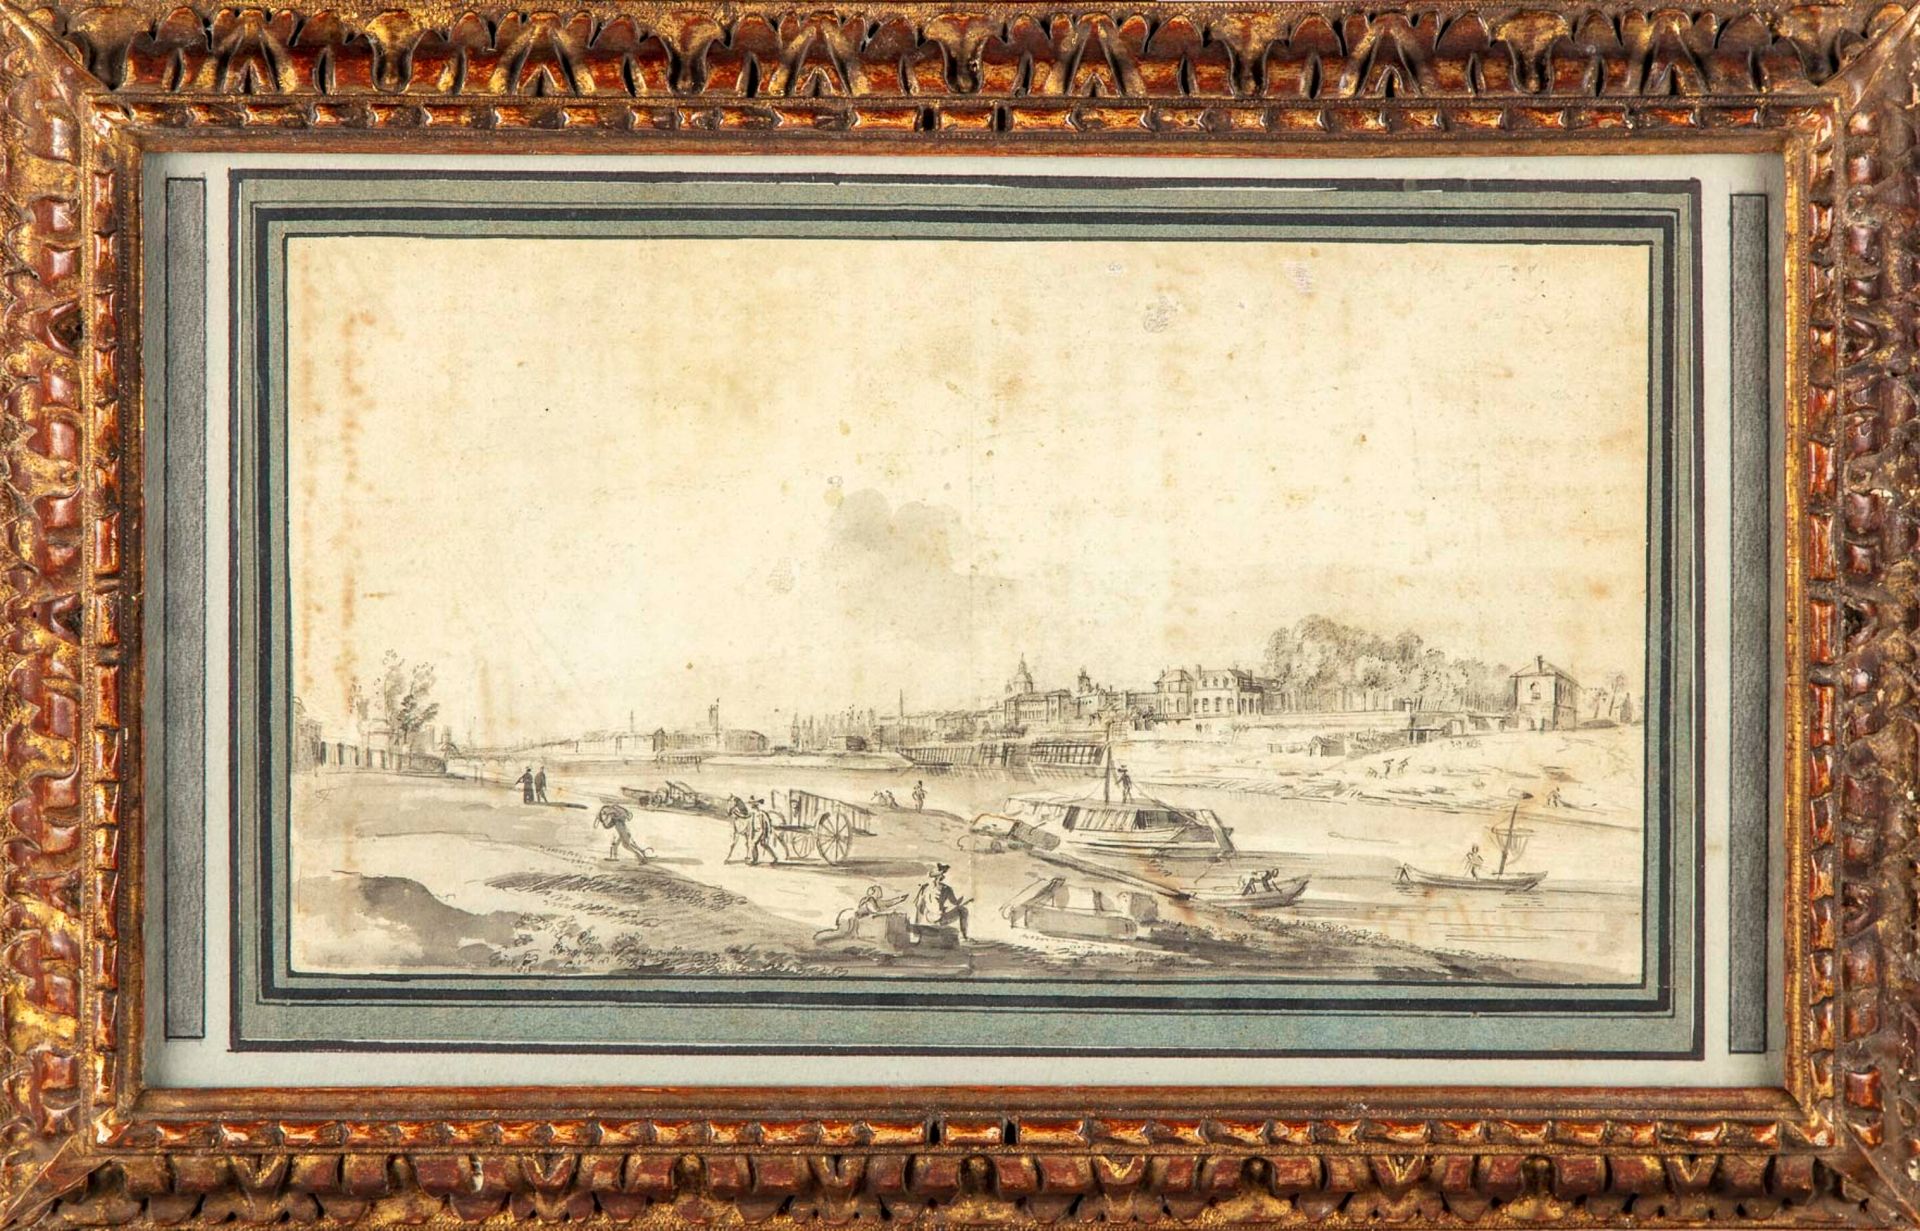 ECOLE FRANCAISE XVIIIè 18世纪法国学校

动画的河岸

水墨画

20 x 36,6 cm

在其模制的木质框架中